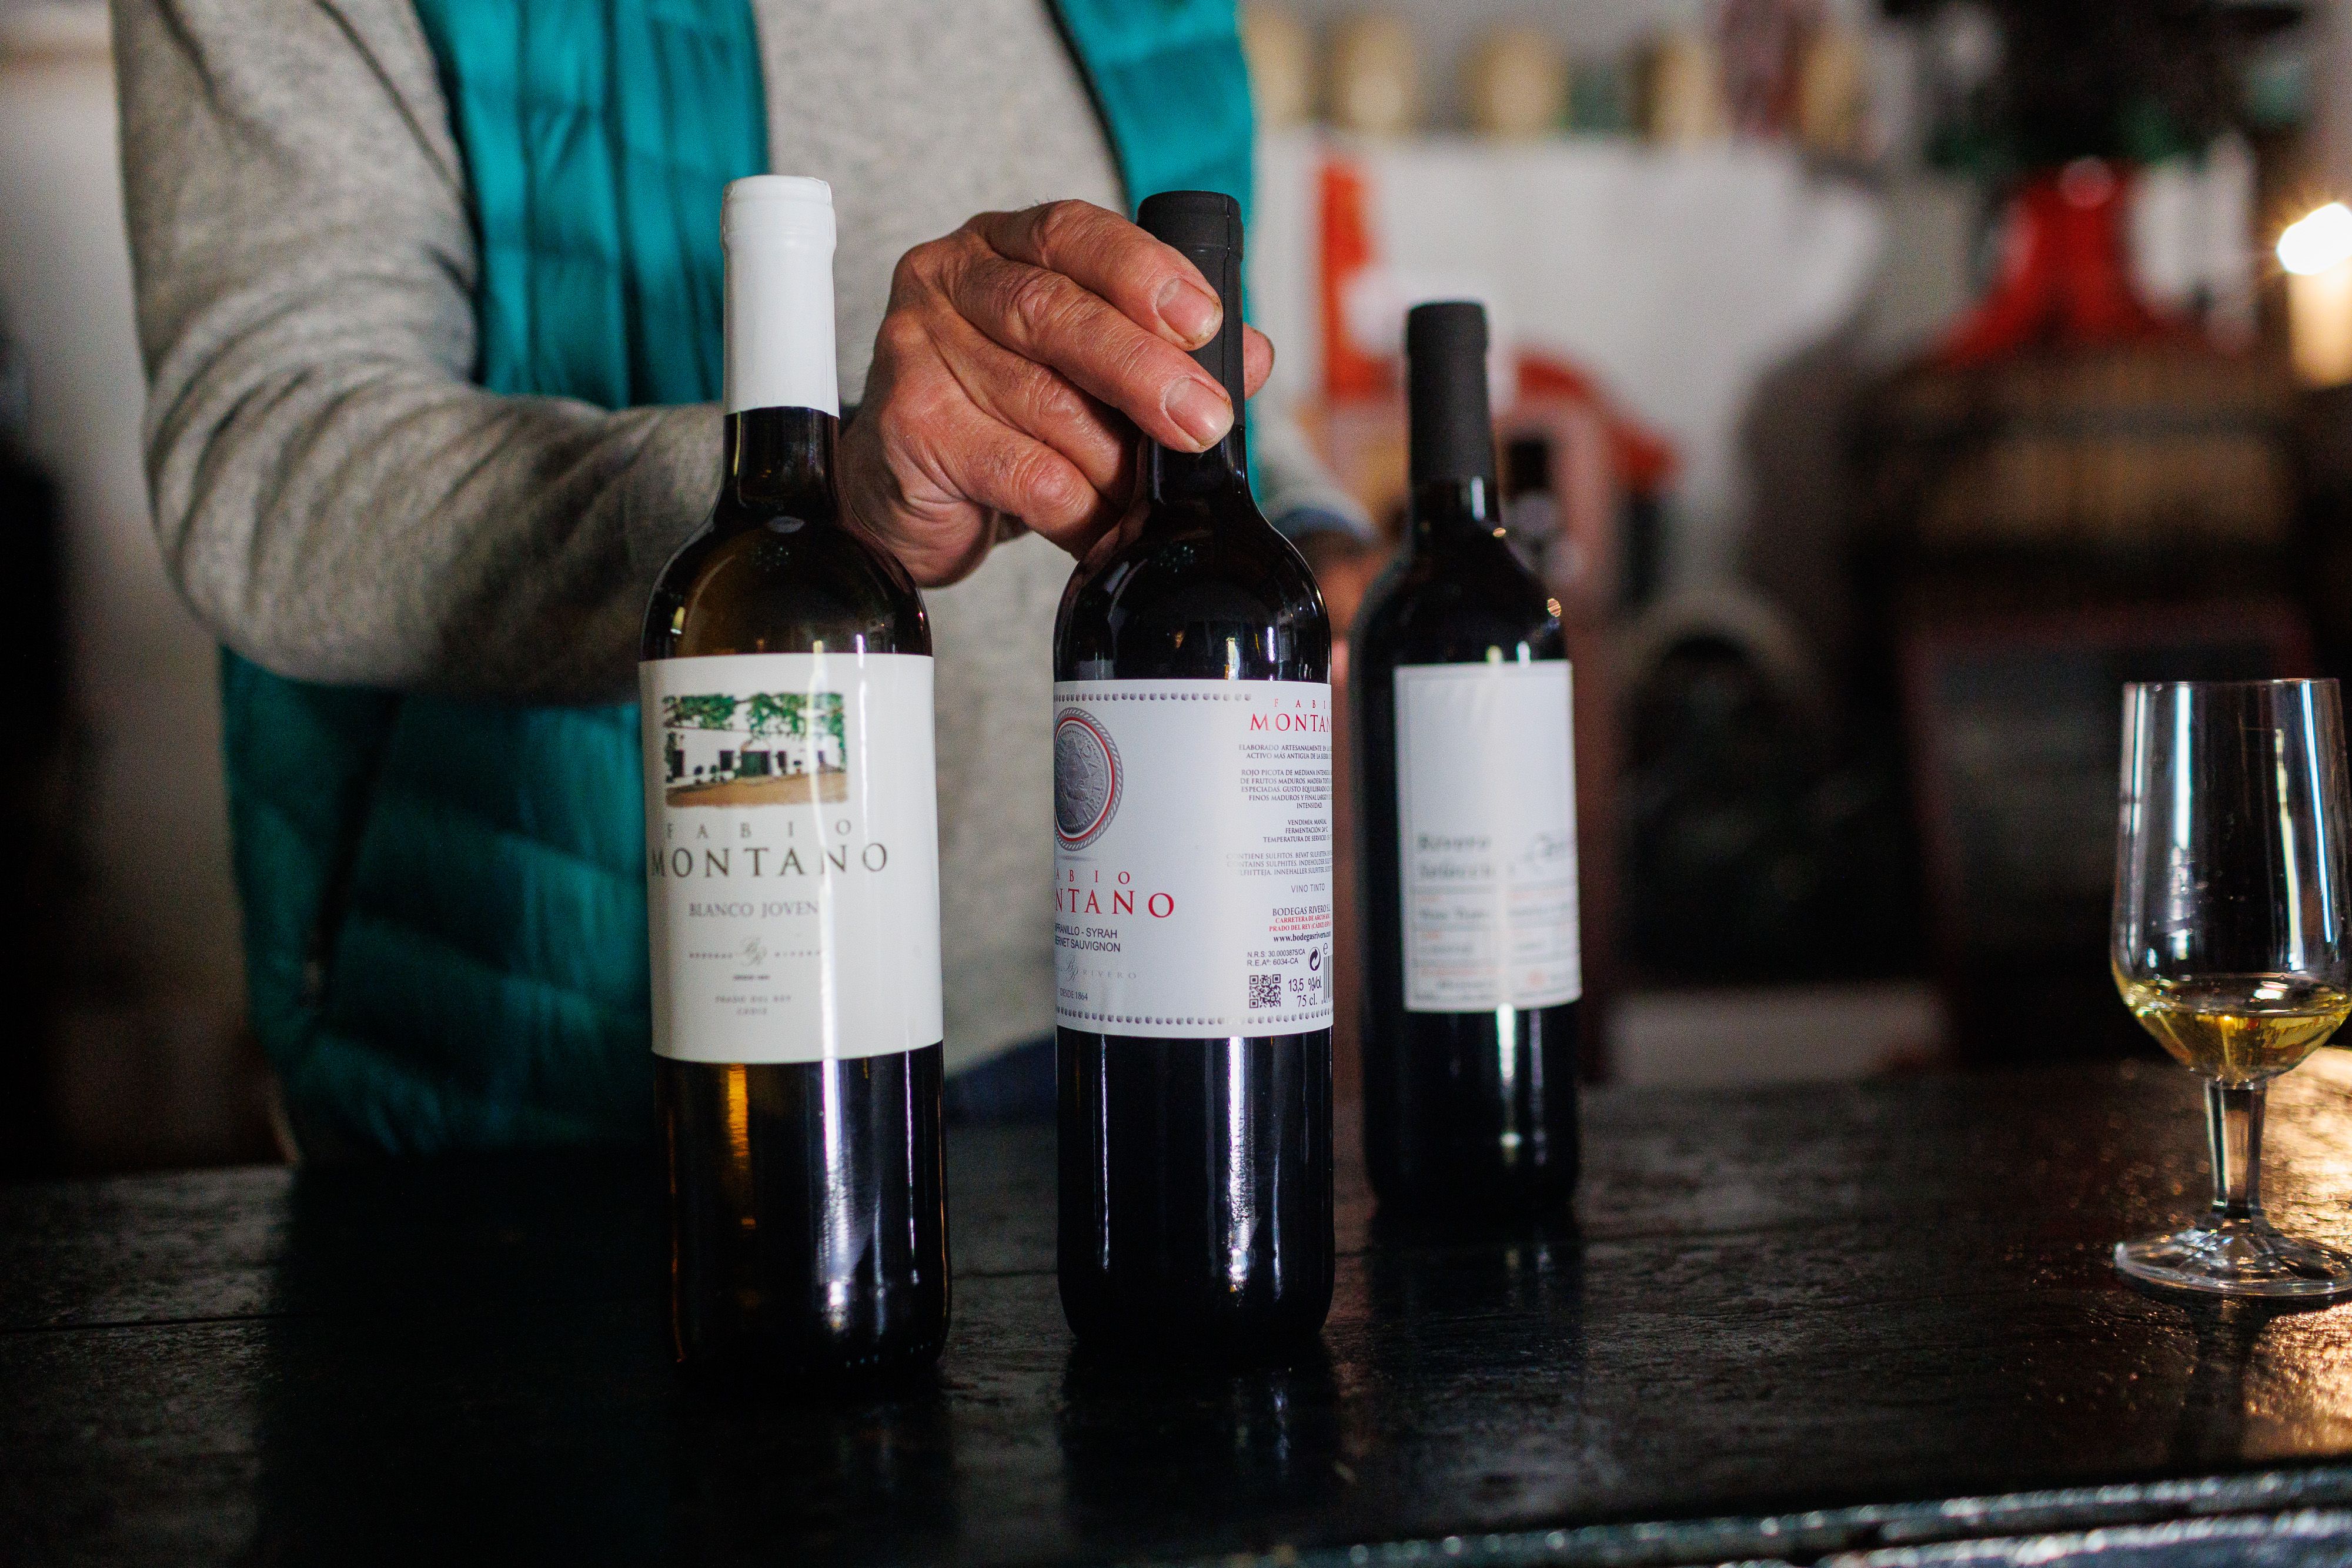 Los distintos vinos que producen bajo la etiqueta Fabio Montano.